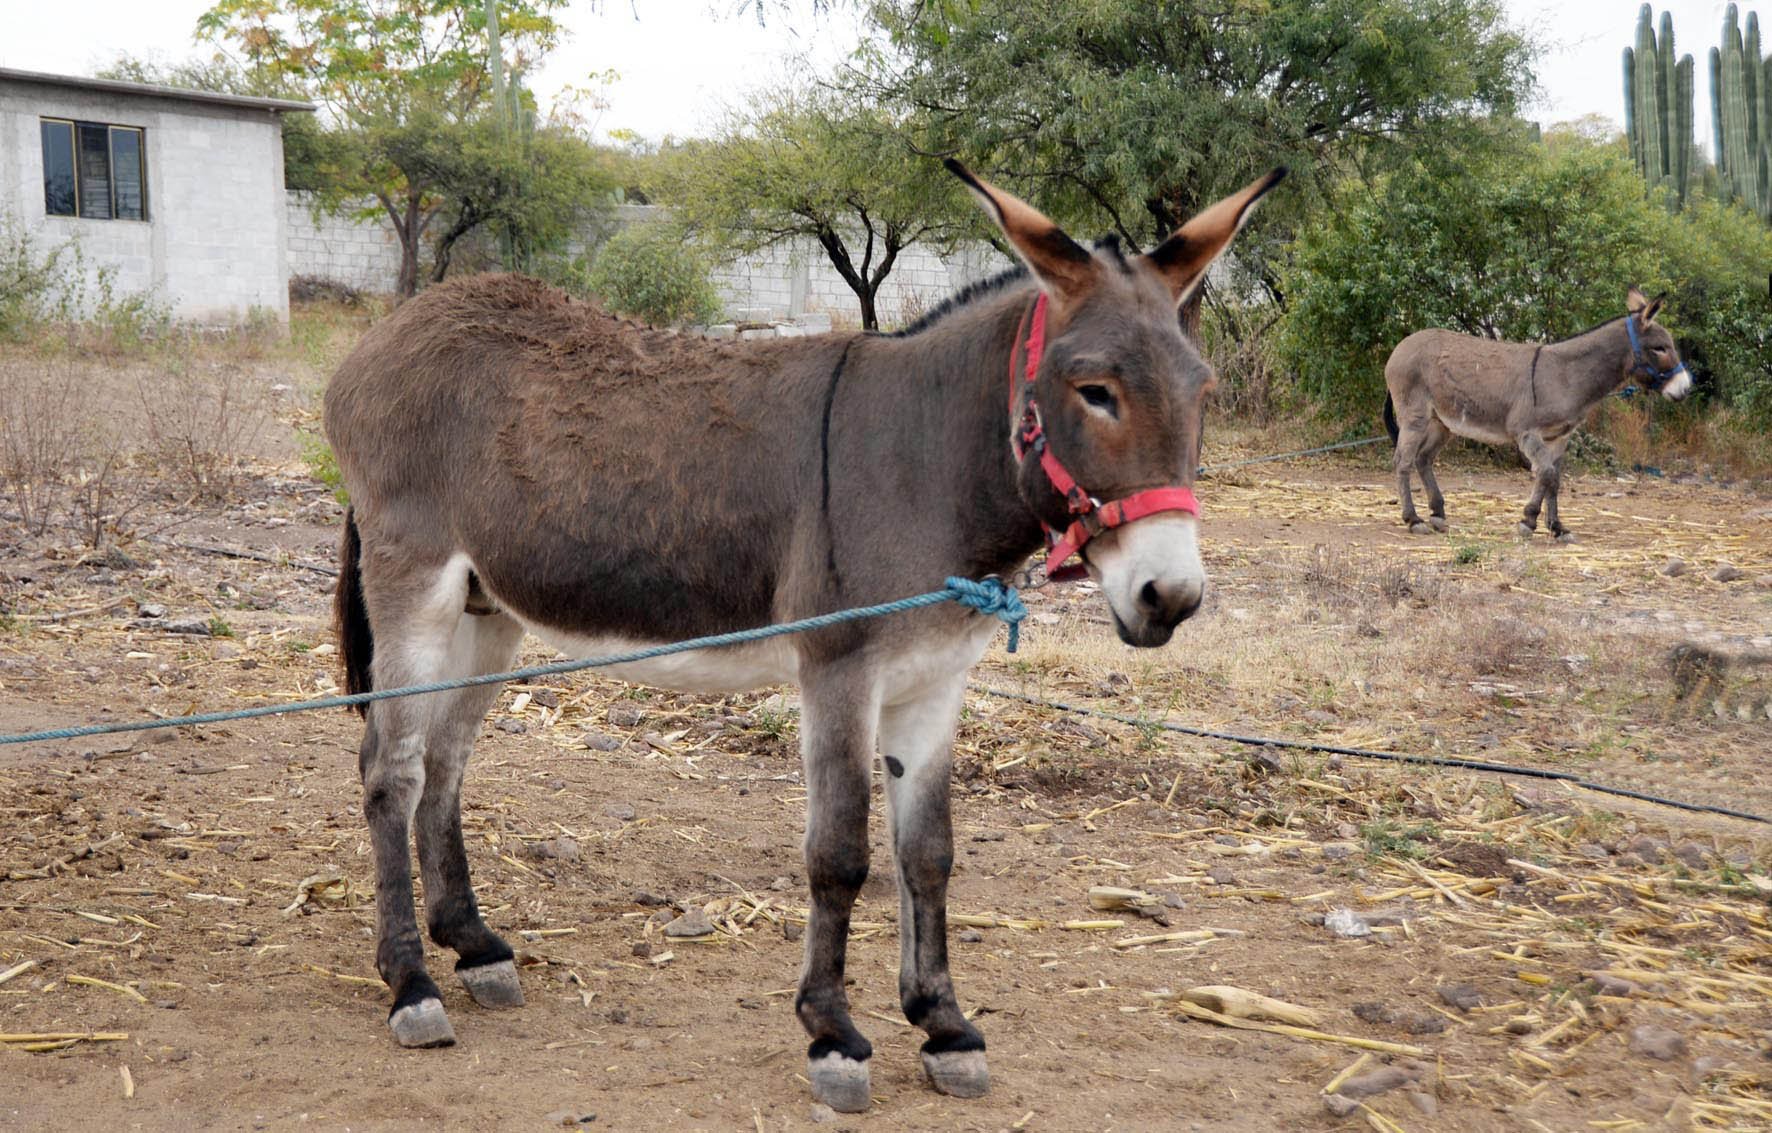 Programa Donkey Sanctuary-UNAM promueve el bienestar de 260 comunidades en donde se usan caballos, mulas y burros para el trabajo